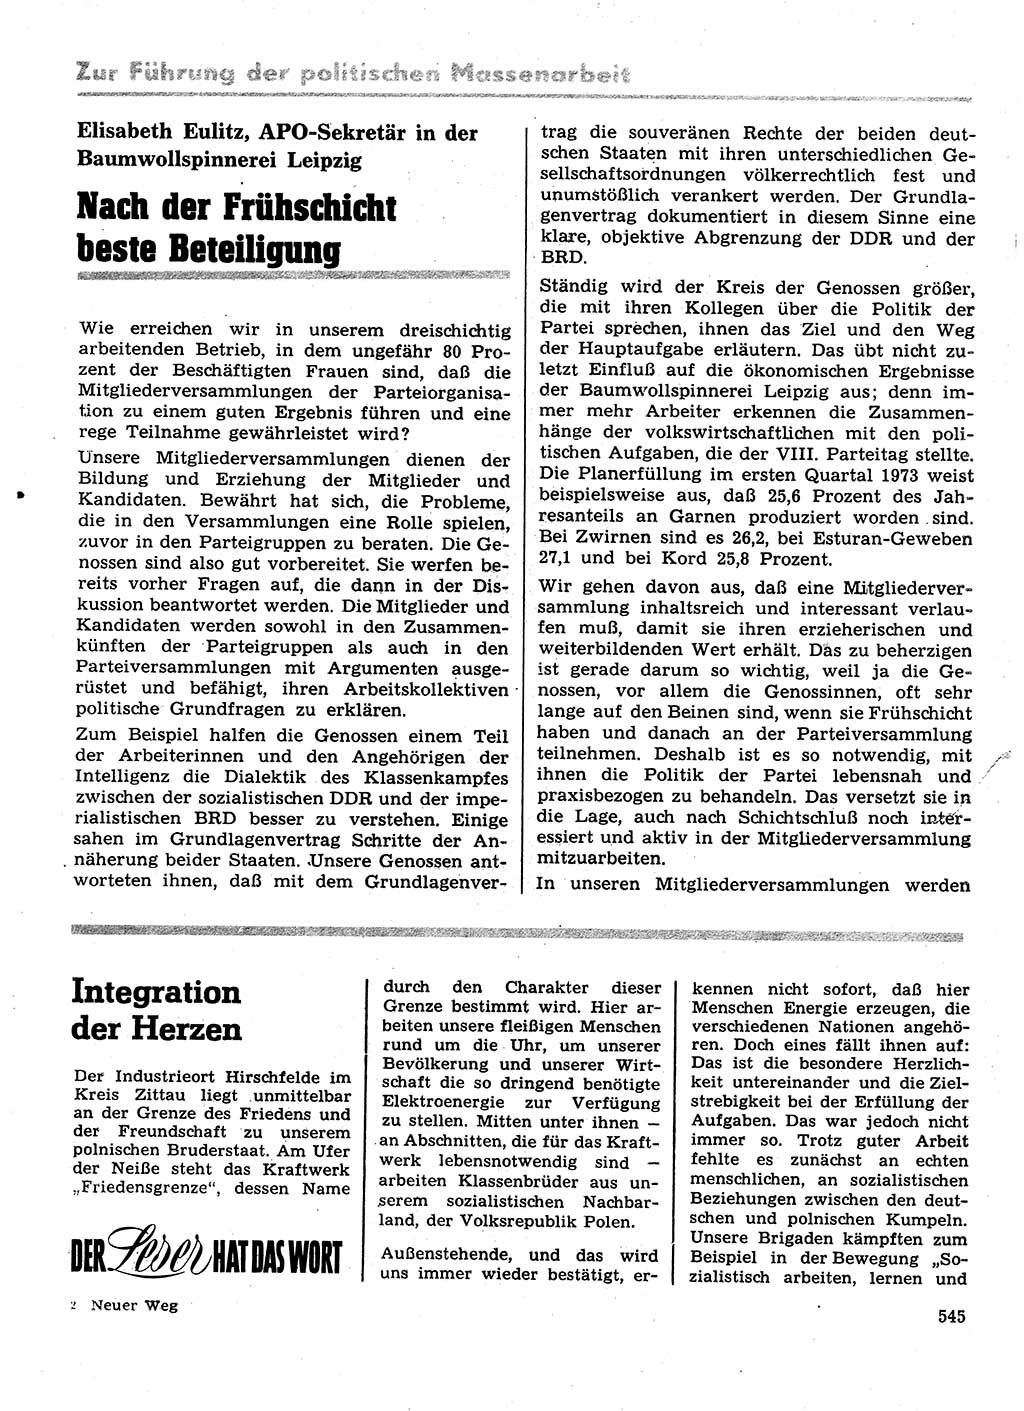 Neuer Weg (NW), Organ des Zentralkomitees (ZK) der SED (Sozialistische Einheitspartei Deutschlands) für Fragen des Parteilebens, 28. Jahrgang [Deutsche Demokratische Republik (DDR)] 1973, Seite 545 (NW ZK SED DDR 1973, S. 545)